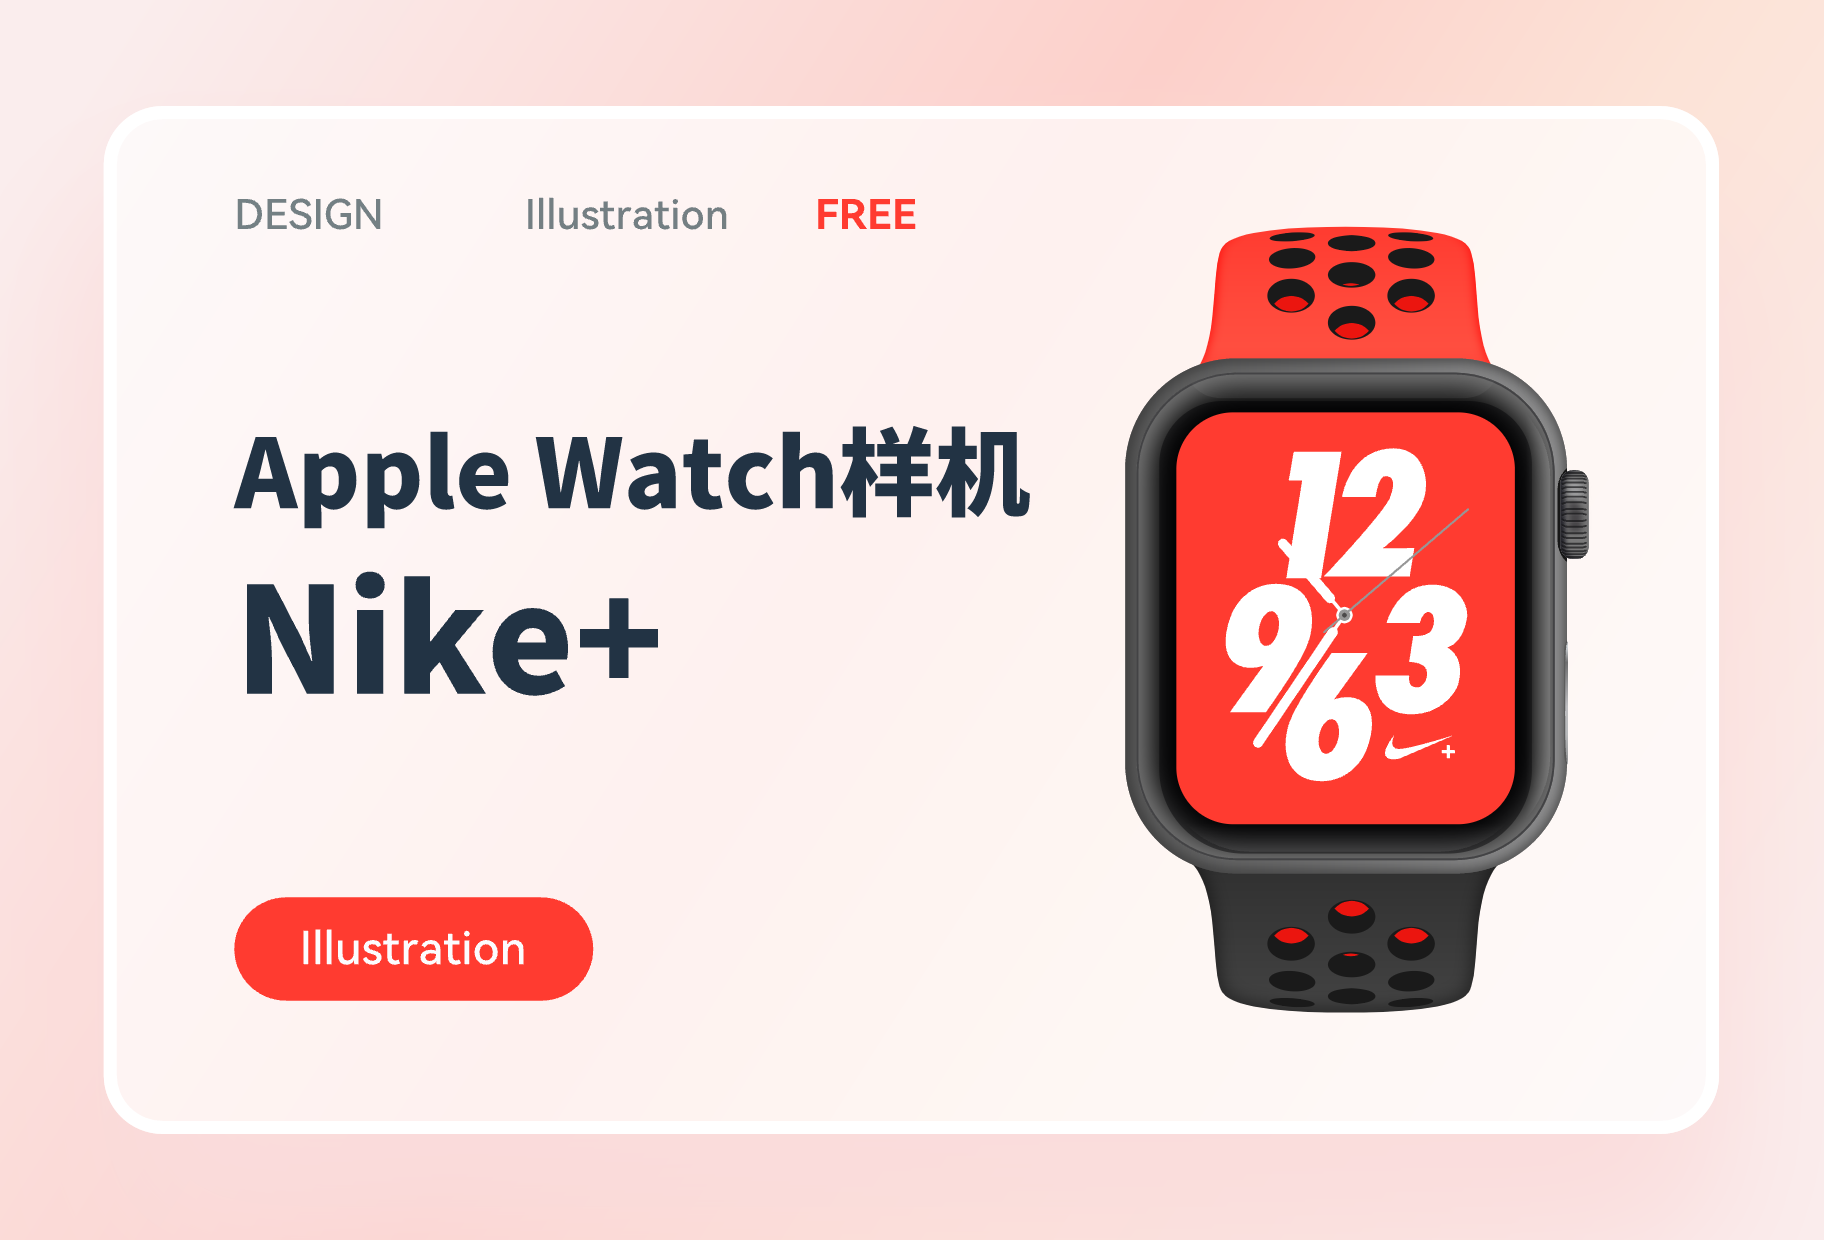 Apple Watch样机 Nike+